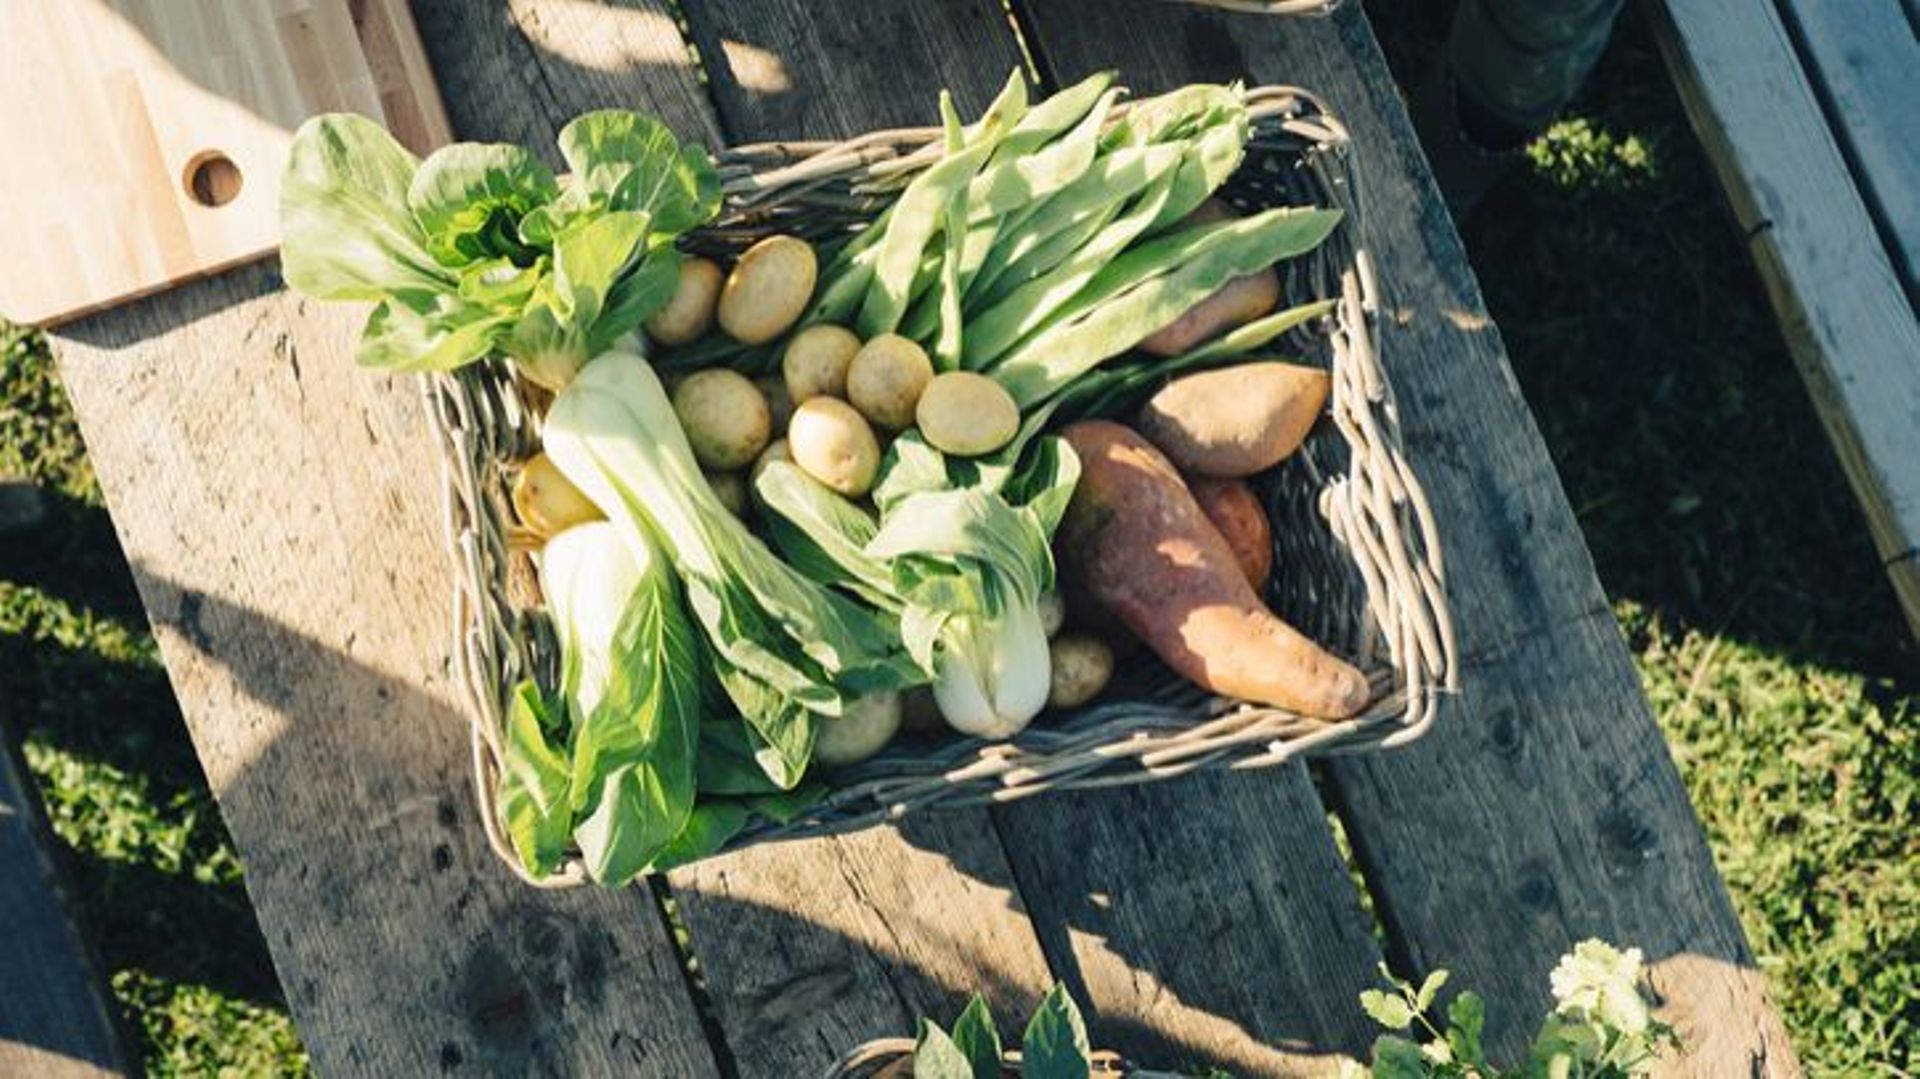 La ferme 3.Zéro située dans le pays de Herve vous propose des fruits et légumes BIO